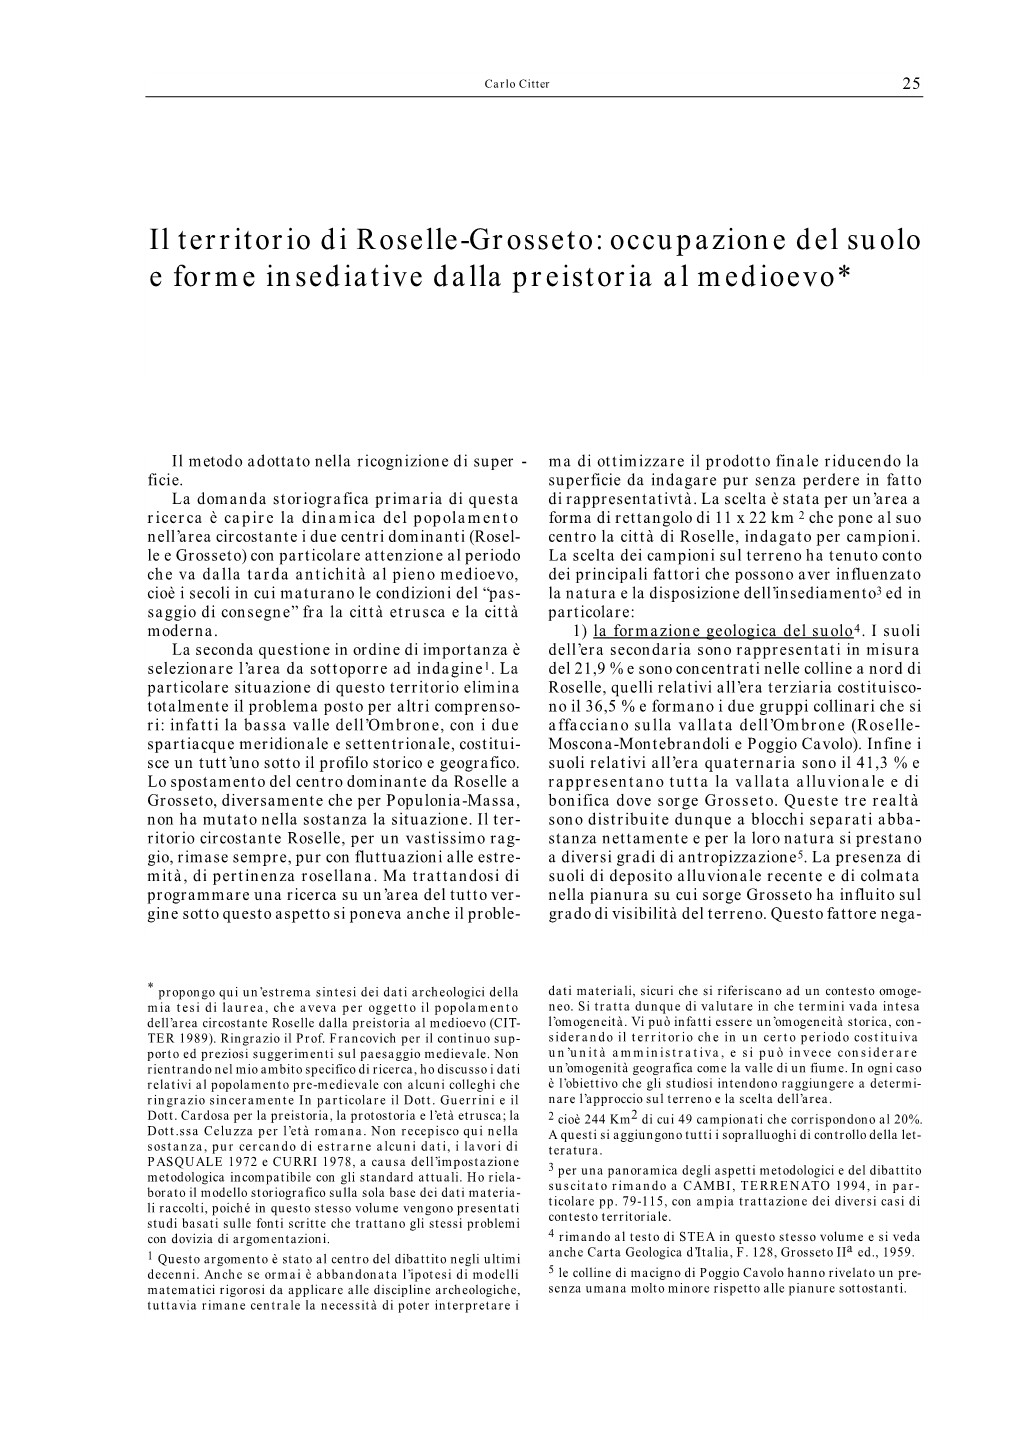 Il Territorio Di Roselle-Grosseto: Occupazione Del Suolo E Forme Insediative Dalla Preistoria Al Medioevo*